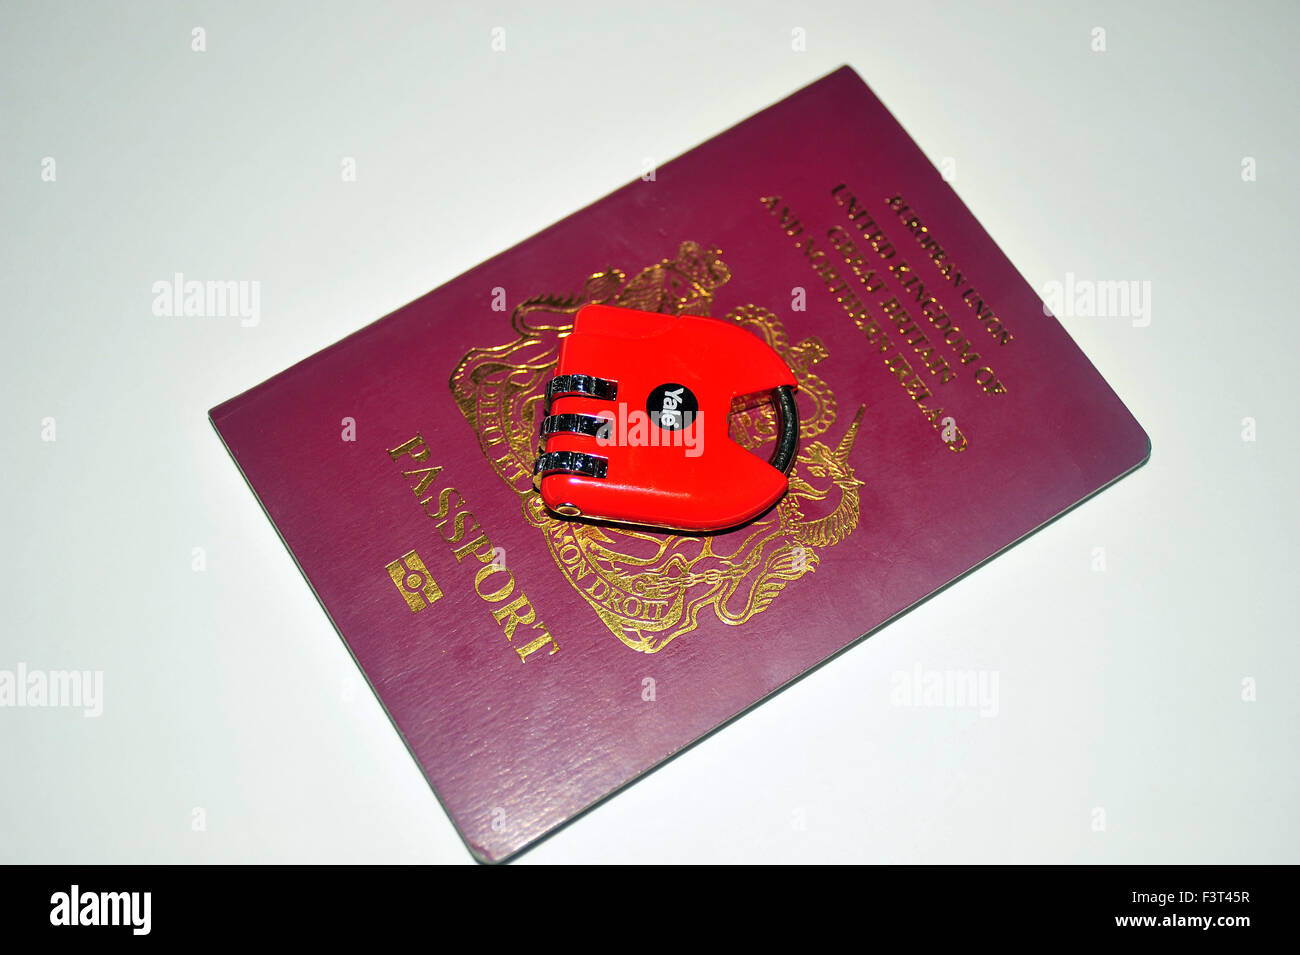 Un pasaporte británico rojo con una cerradura de combinación candado en la parte superior de éste. Foto de stock